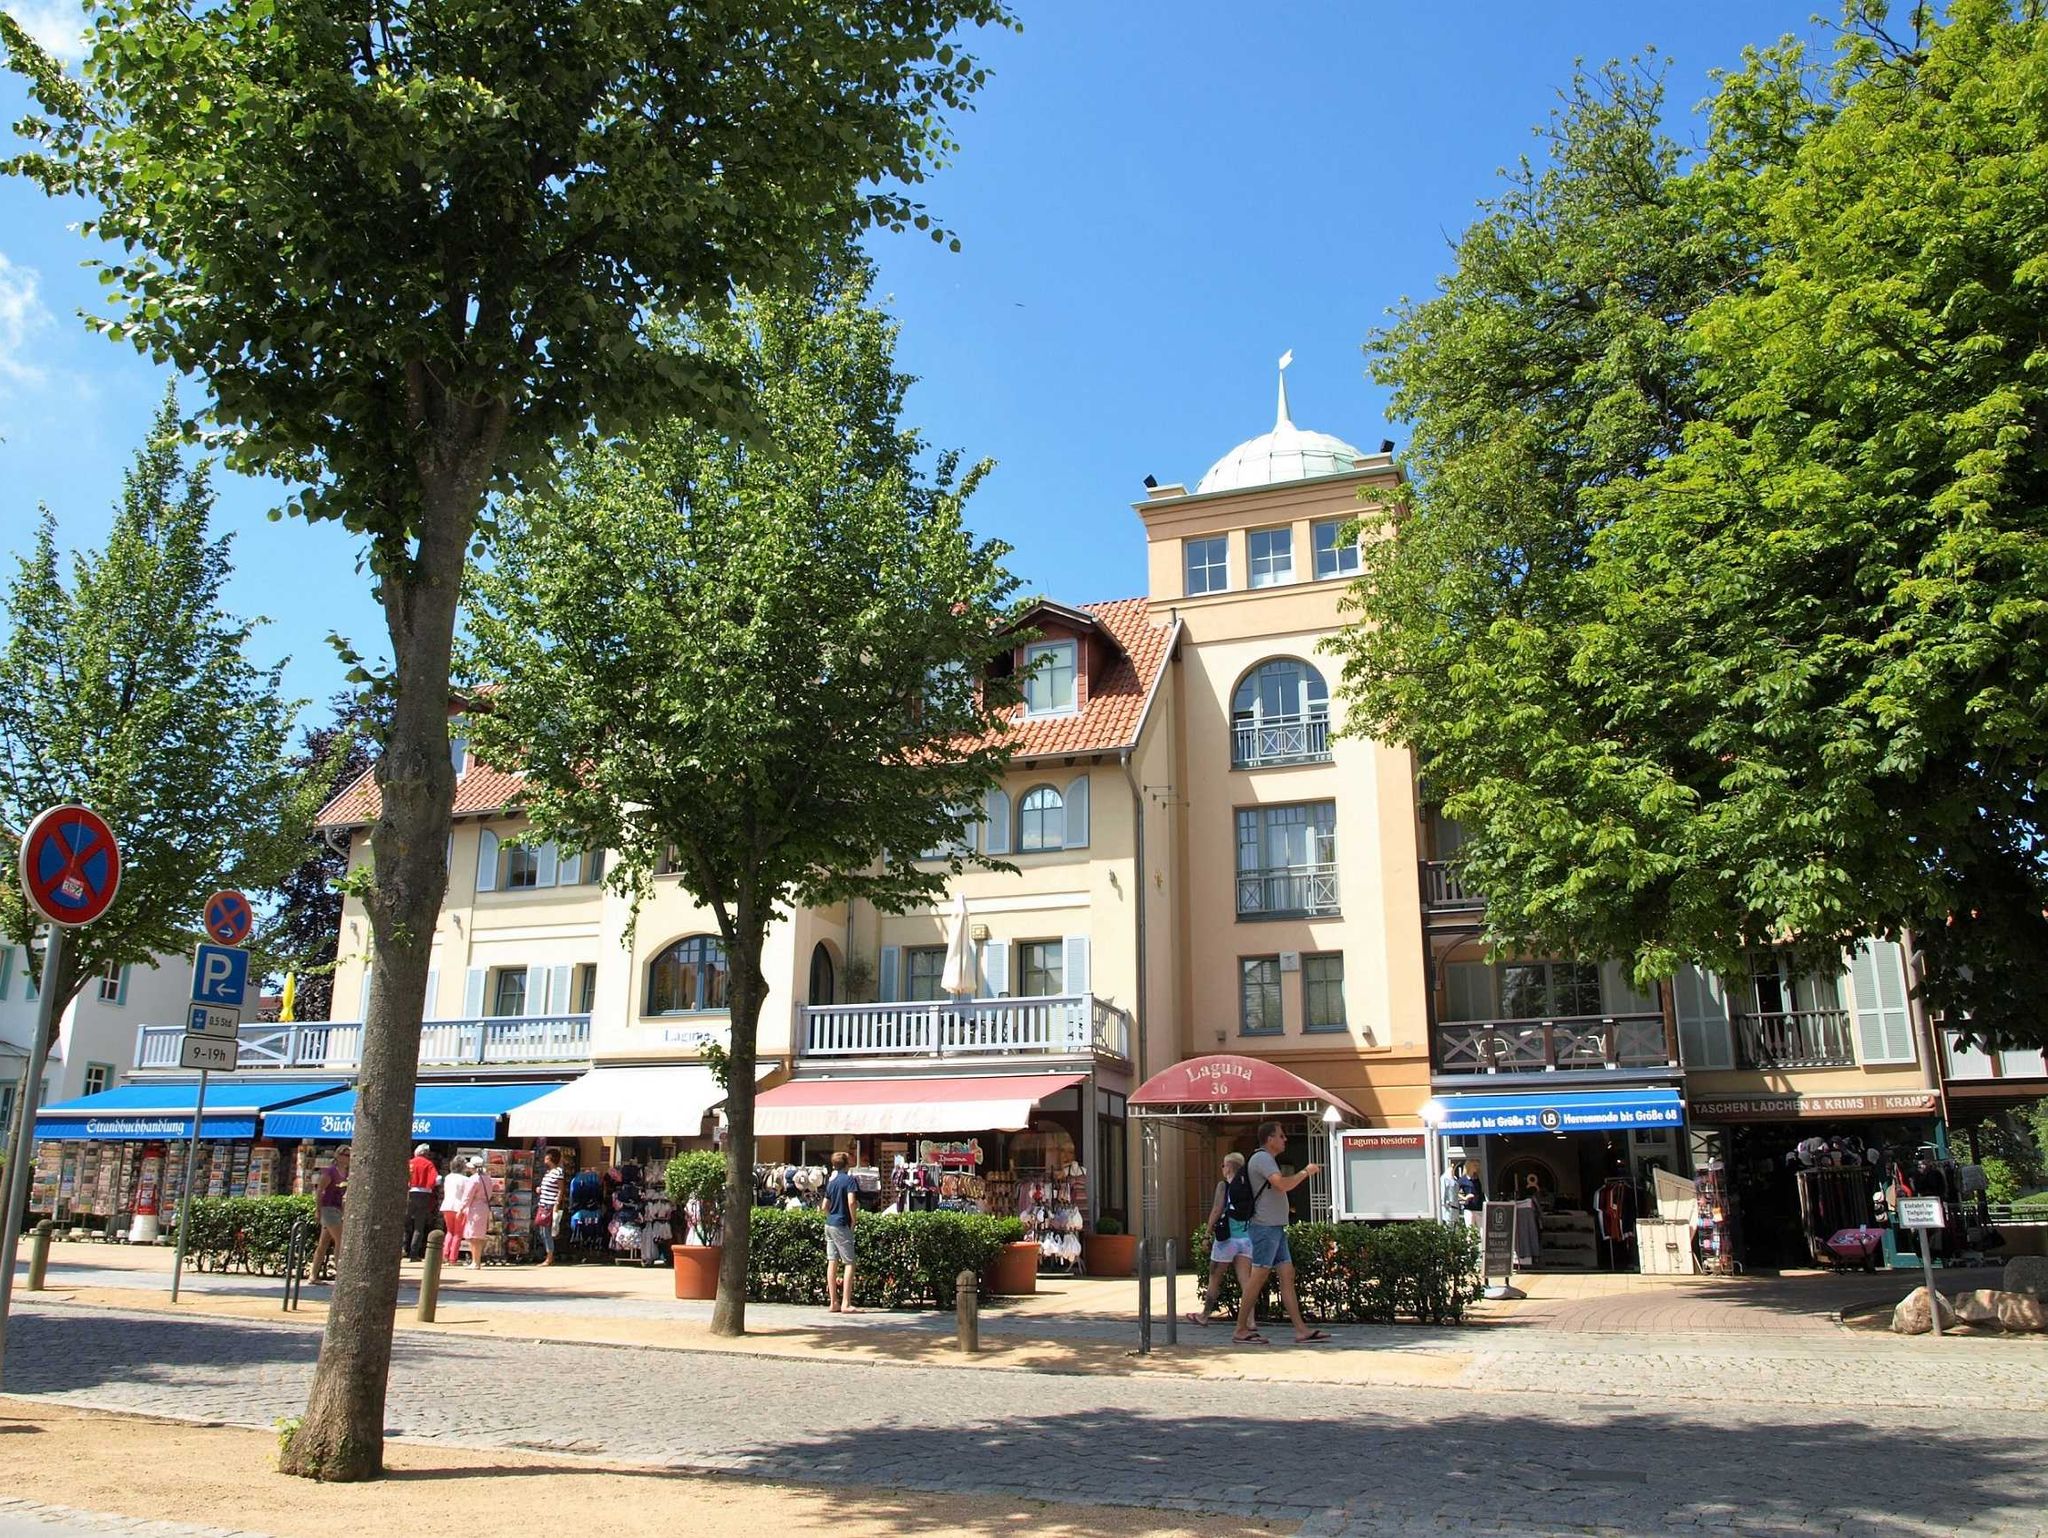 2 Ferienhäuser nebeneinander an der Ostsee - Deutschland - Wismar - Tipp - Empfehlung - 8 Personen - mit Sauna